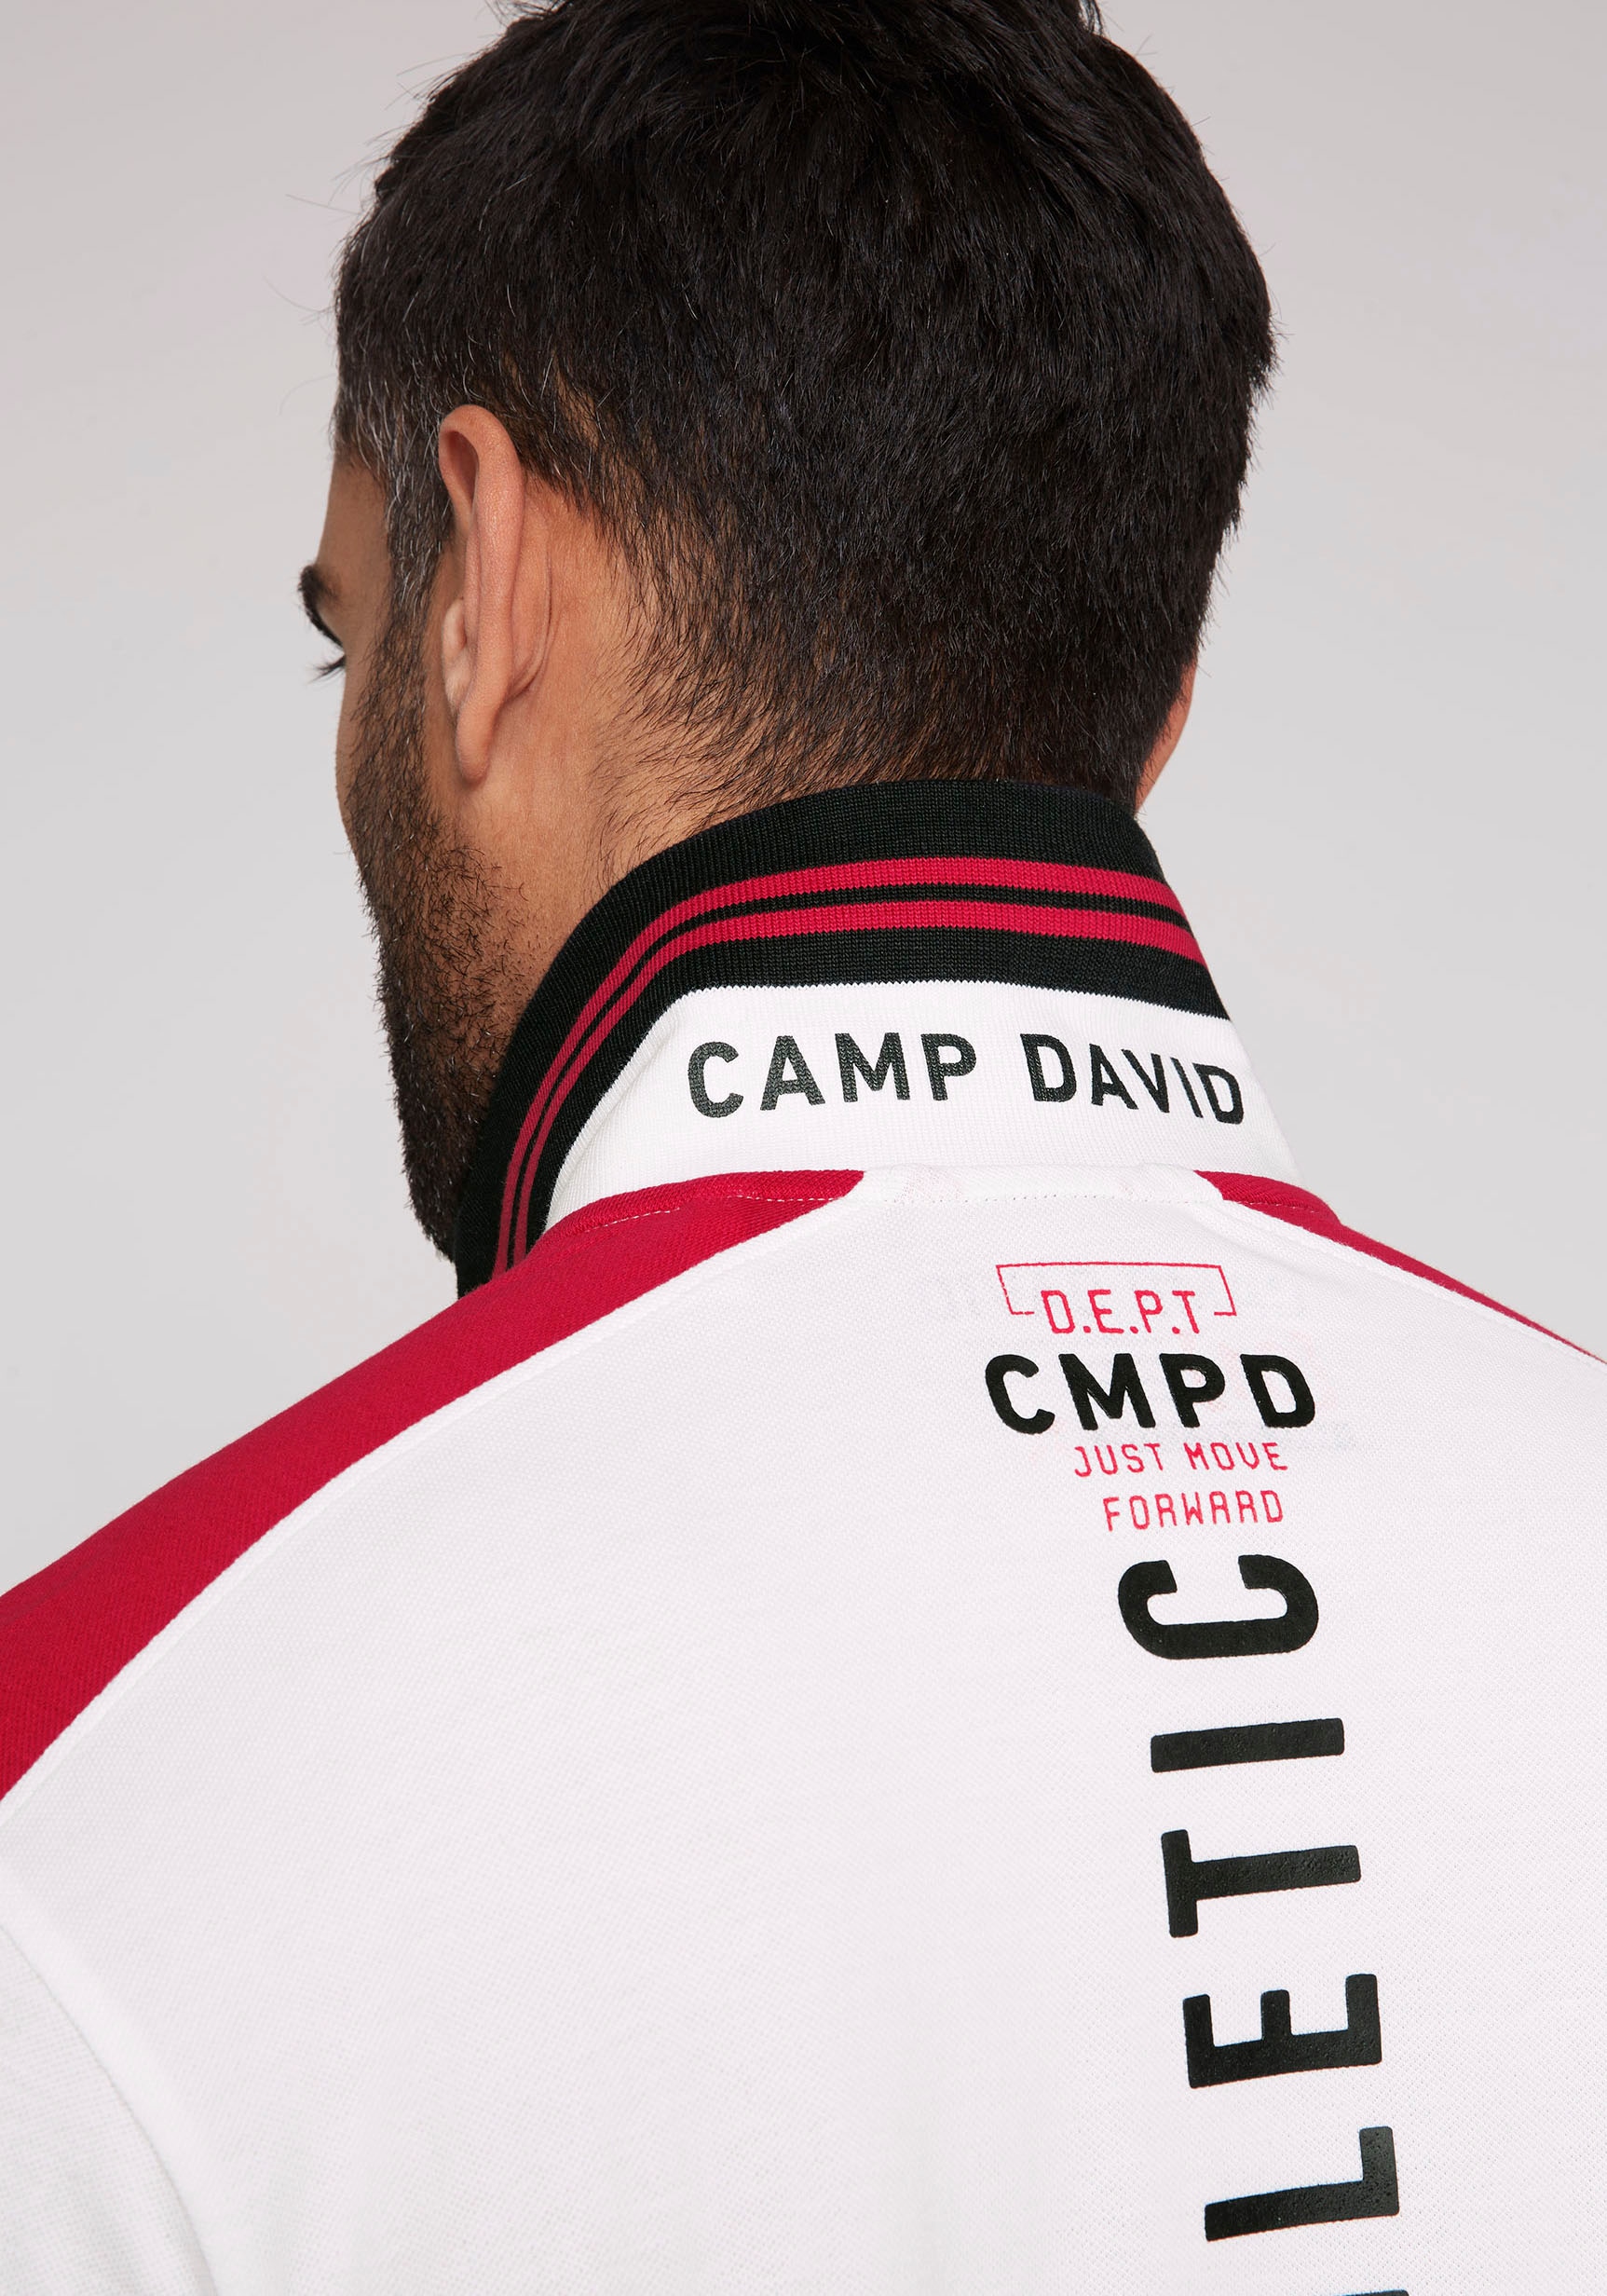 CAMP DAVID Poloshirt, mit Rubber Prints auf Ärmeln, Vorder- und Rückseite